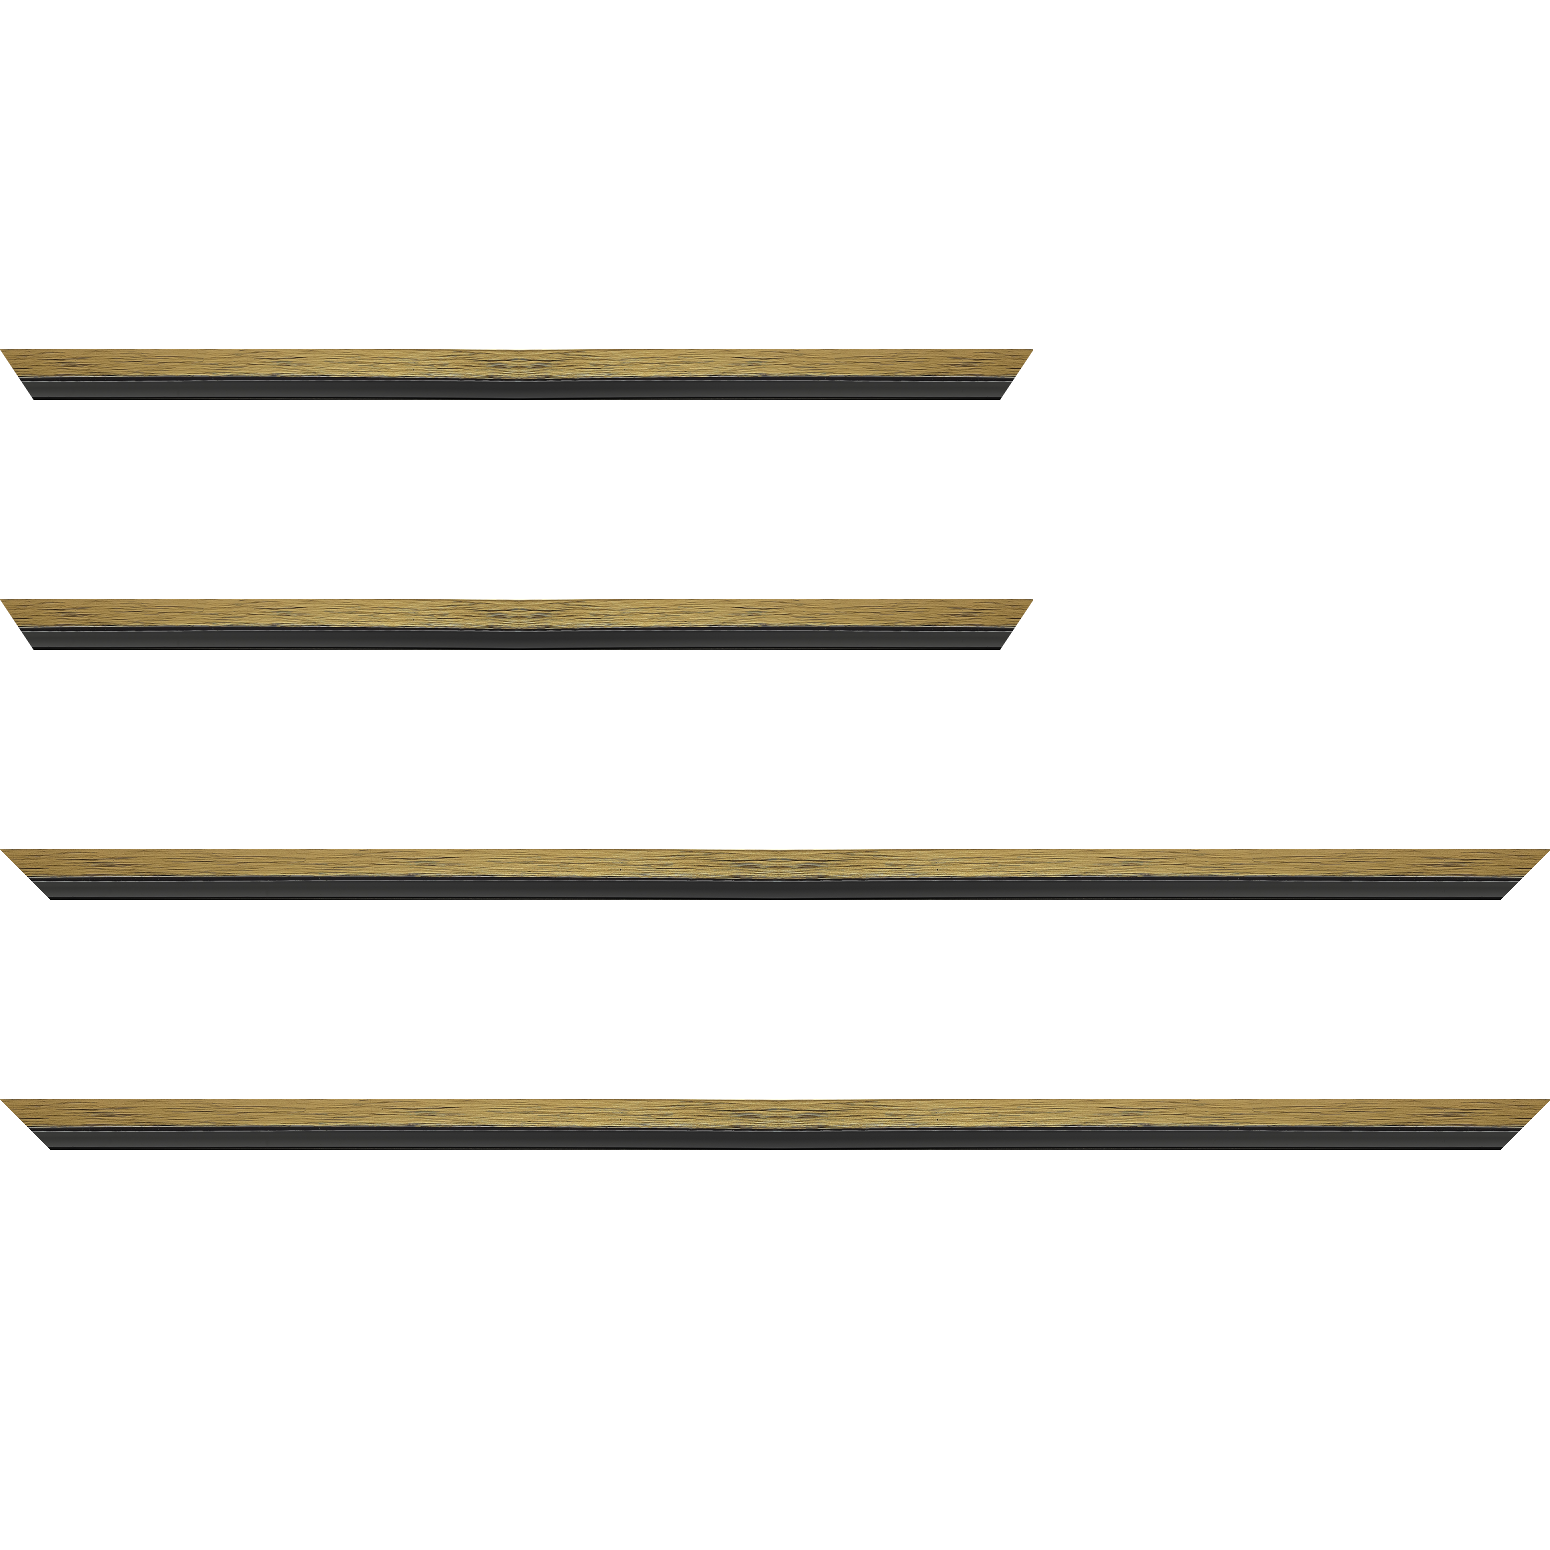 Baguette bois profil plat largeur 1.6cm couleur or contemporain filet noir en retrait de la face du cadre de 6mm assurant un effet très original - 28x34